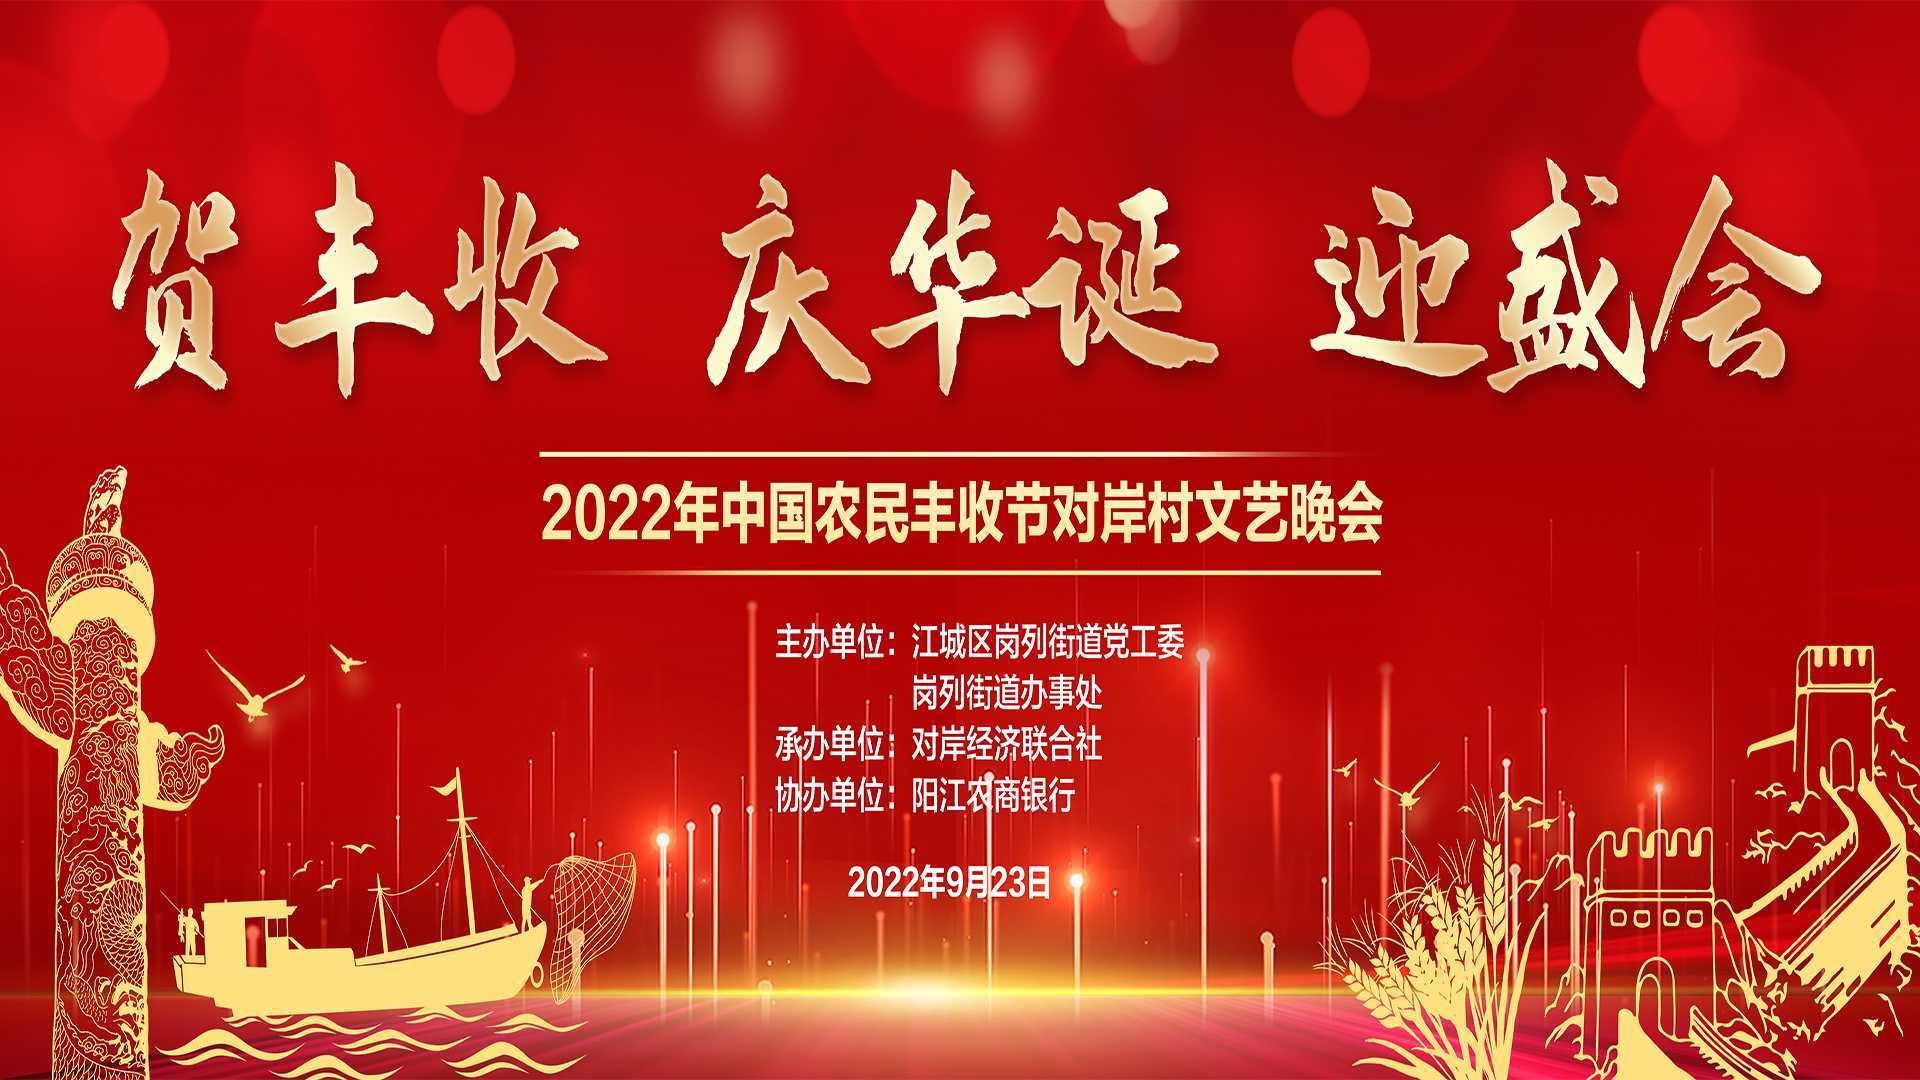 贺丰收、庆华诞、迎盛会 2022年中国农民丰收节对岸村文艺晚会